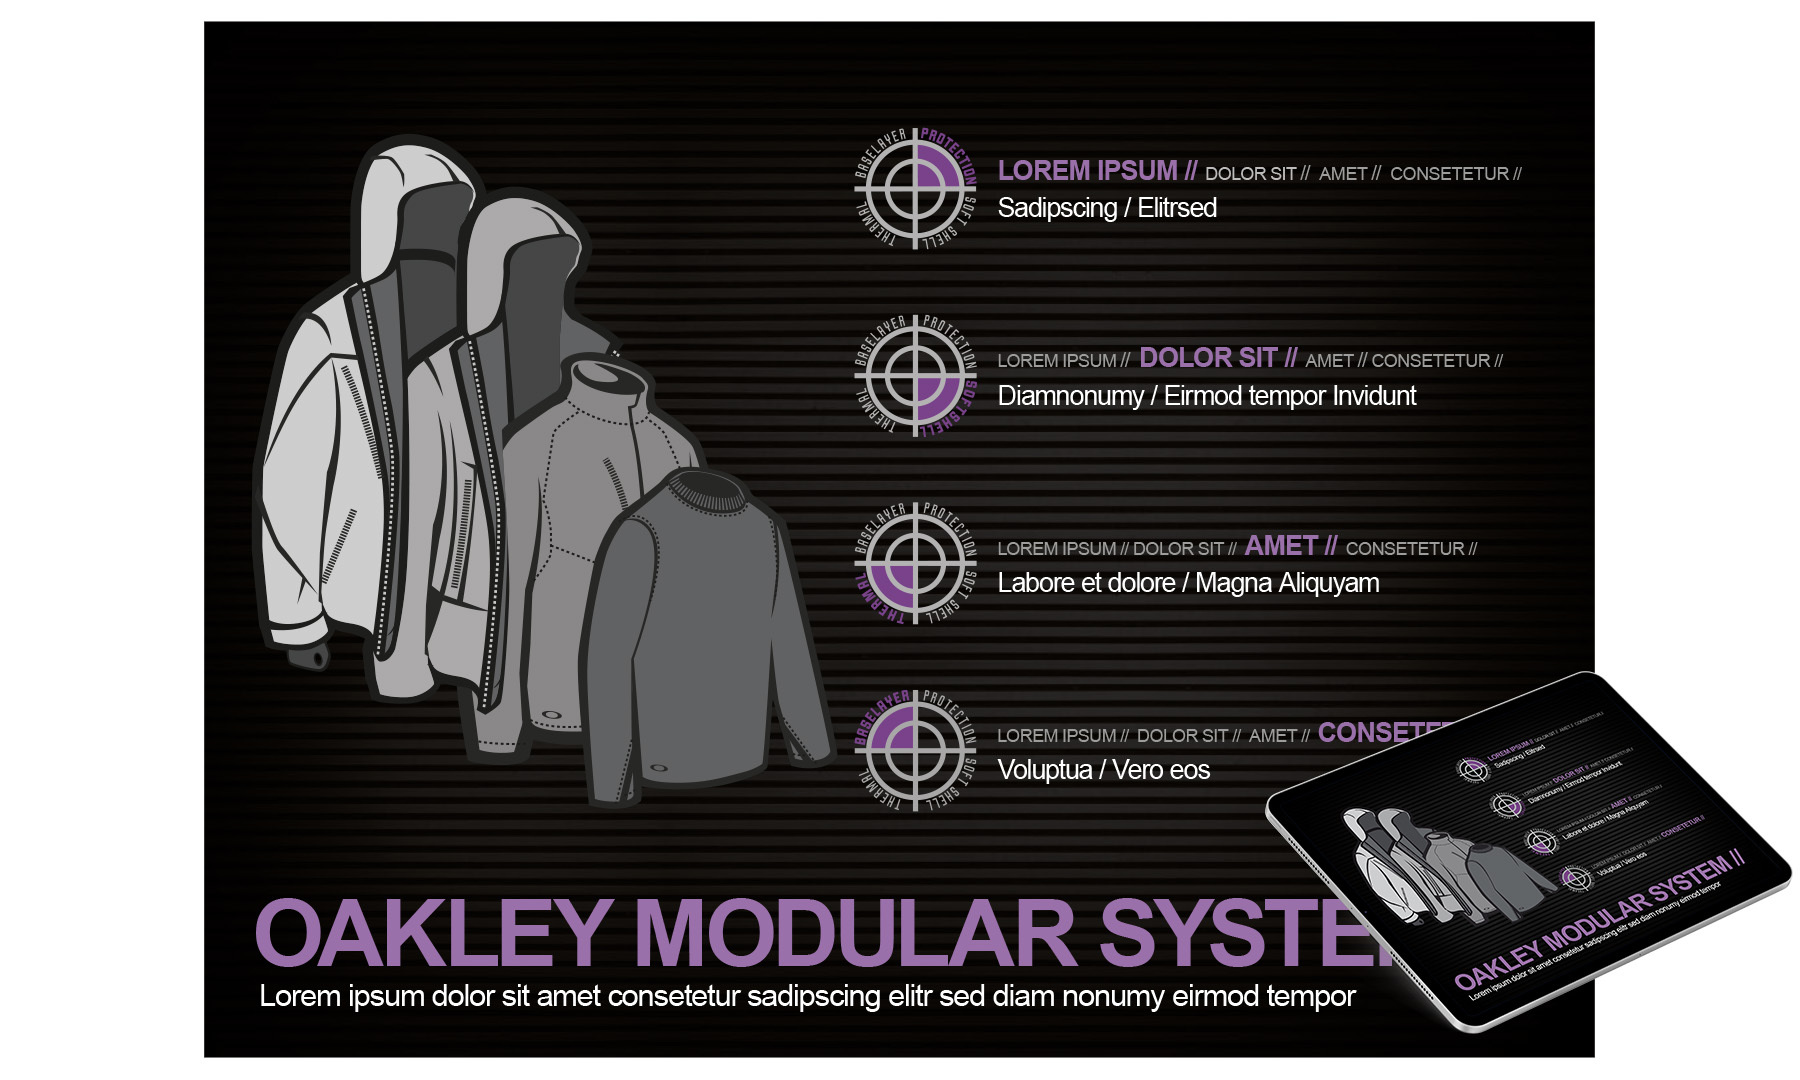 Oakley animierte Powerpoint Präsentation 3